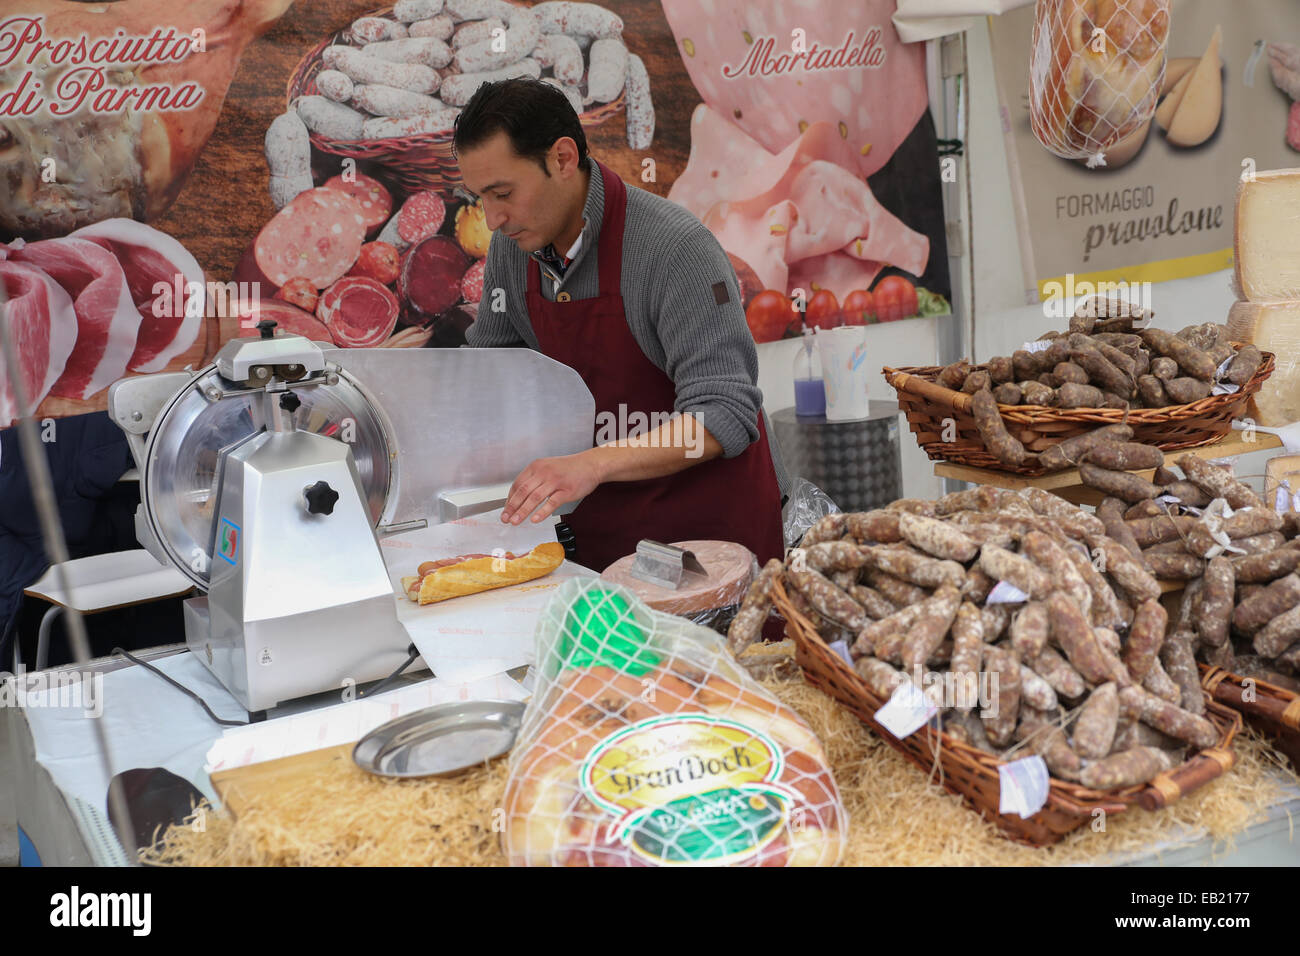 Faire l'homme sandwich jambon italien vendeur de rue l'Europe Banque D'Images